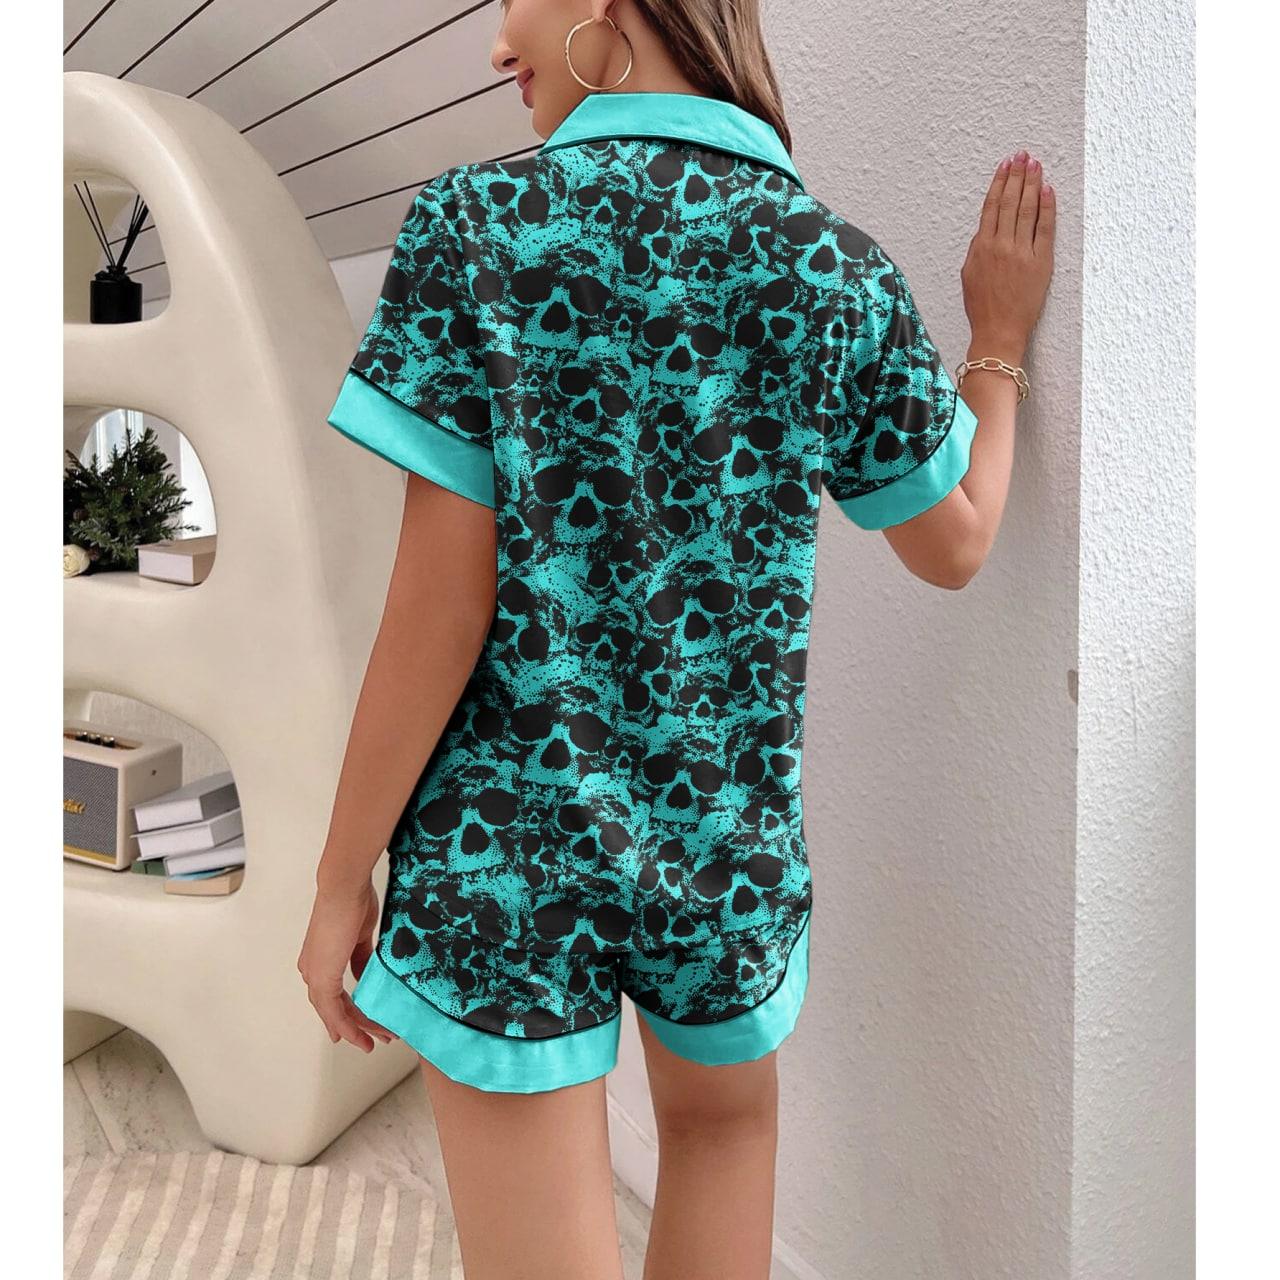 Skull Turquoise Sexy Pajama Sets With Short Sleeve - Wonder Skull